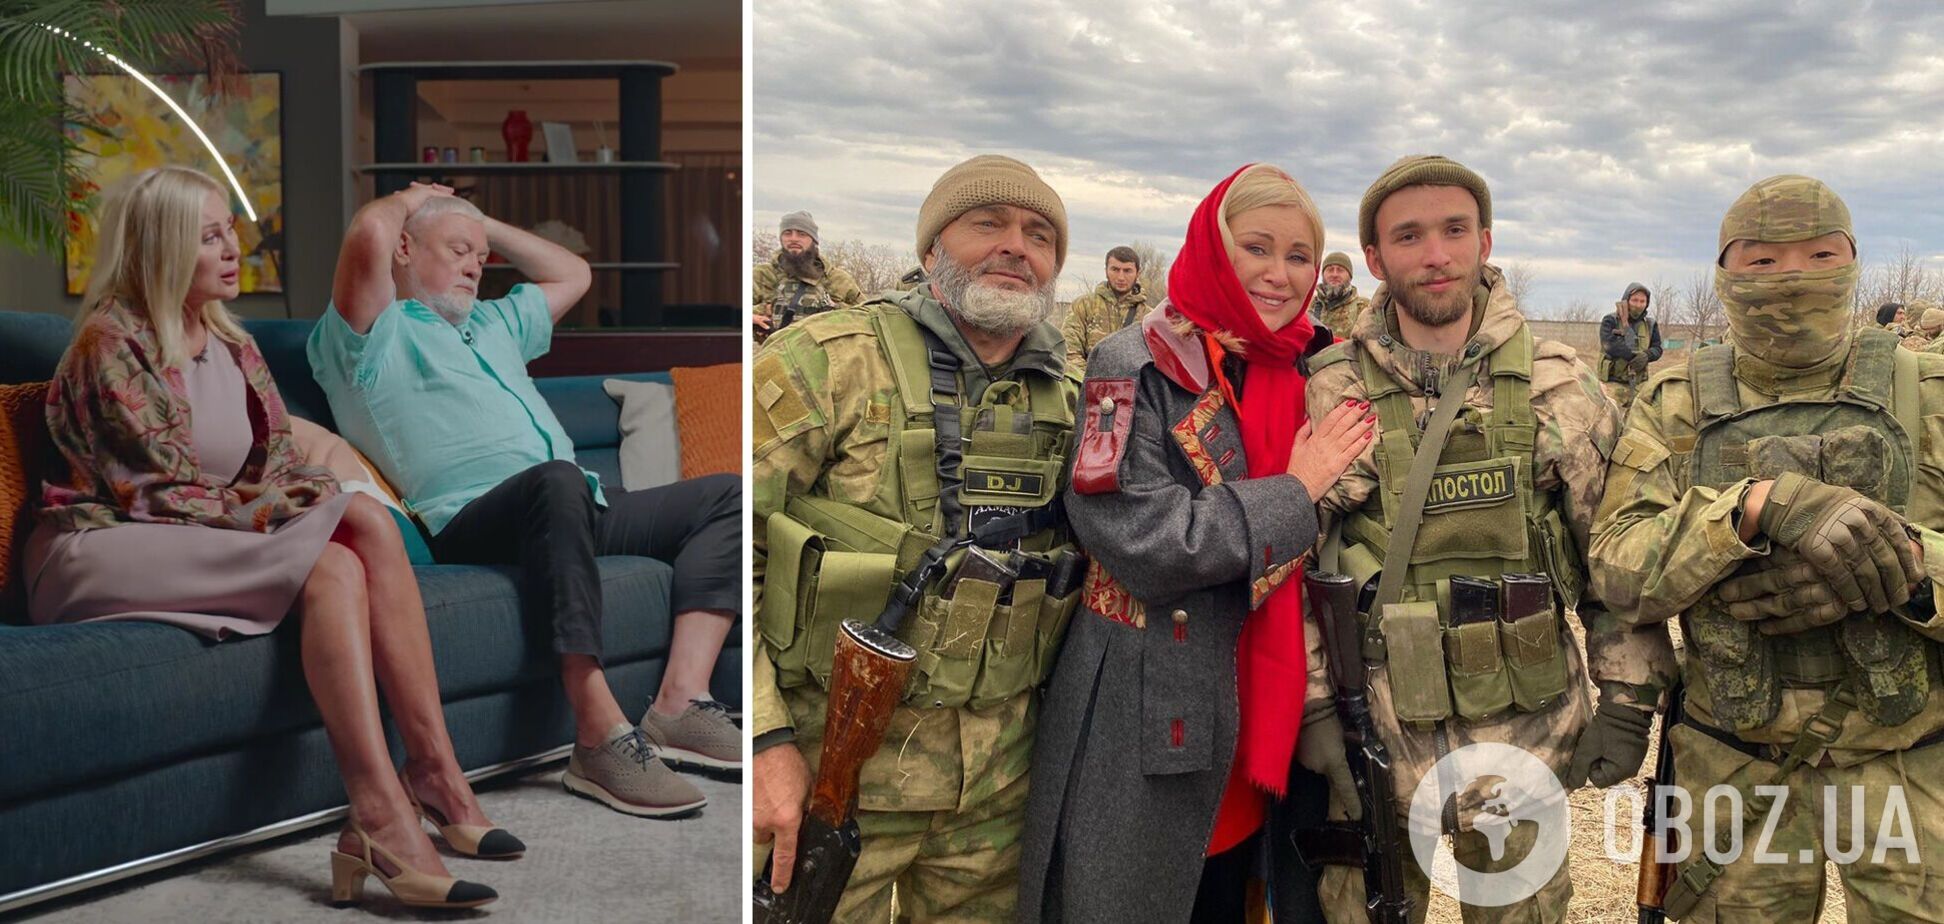 'Вот тє крєст!' Віка і Вадим Циганови, які стали посміховиськами в Дудя, з'їздили на Донбас до окупантів